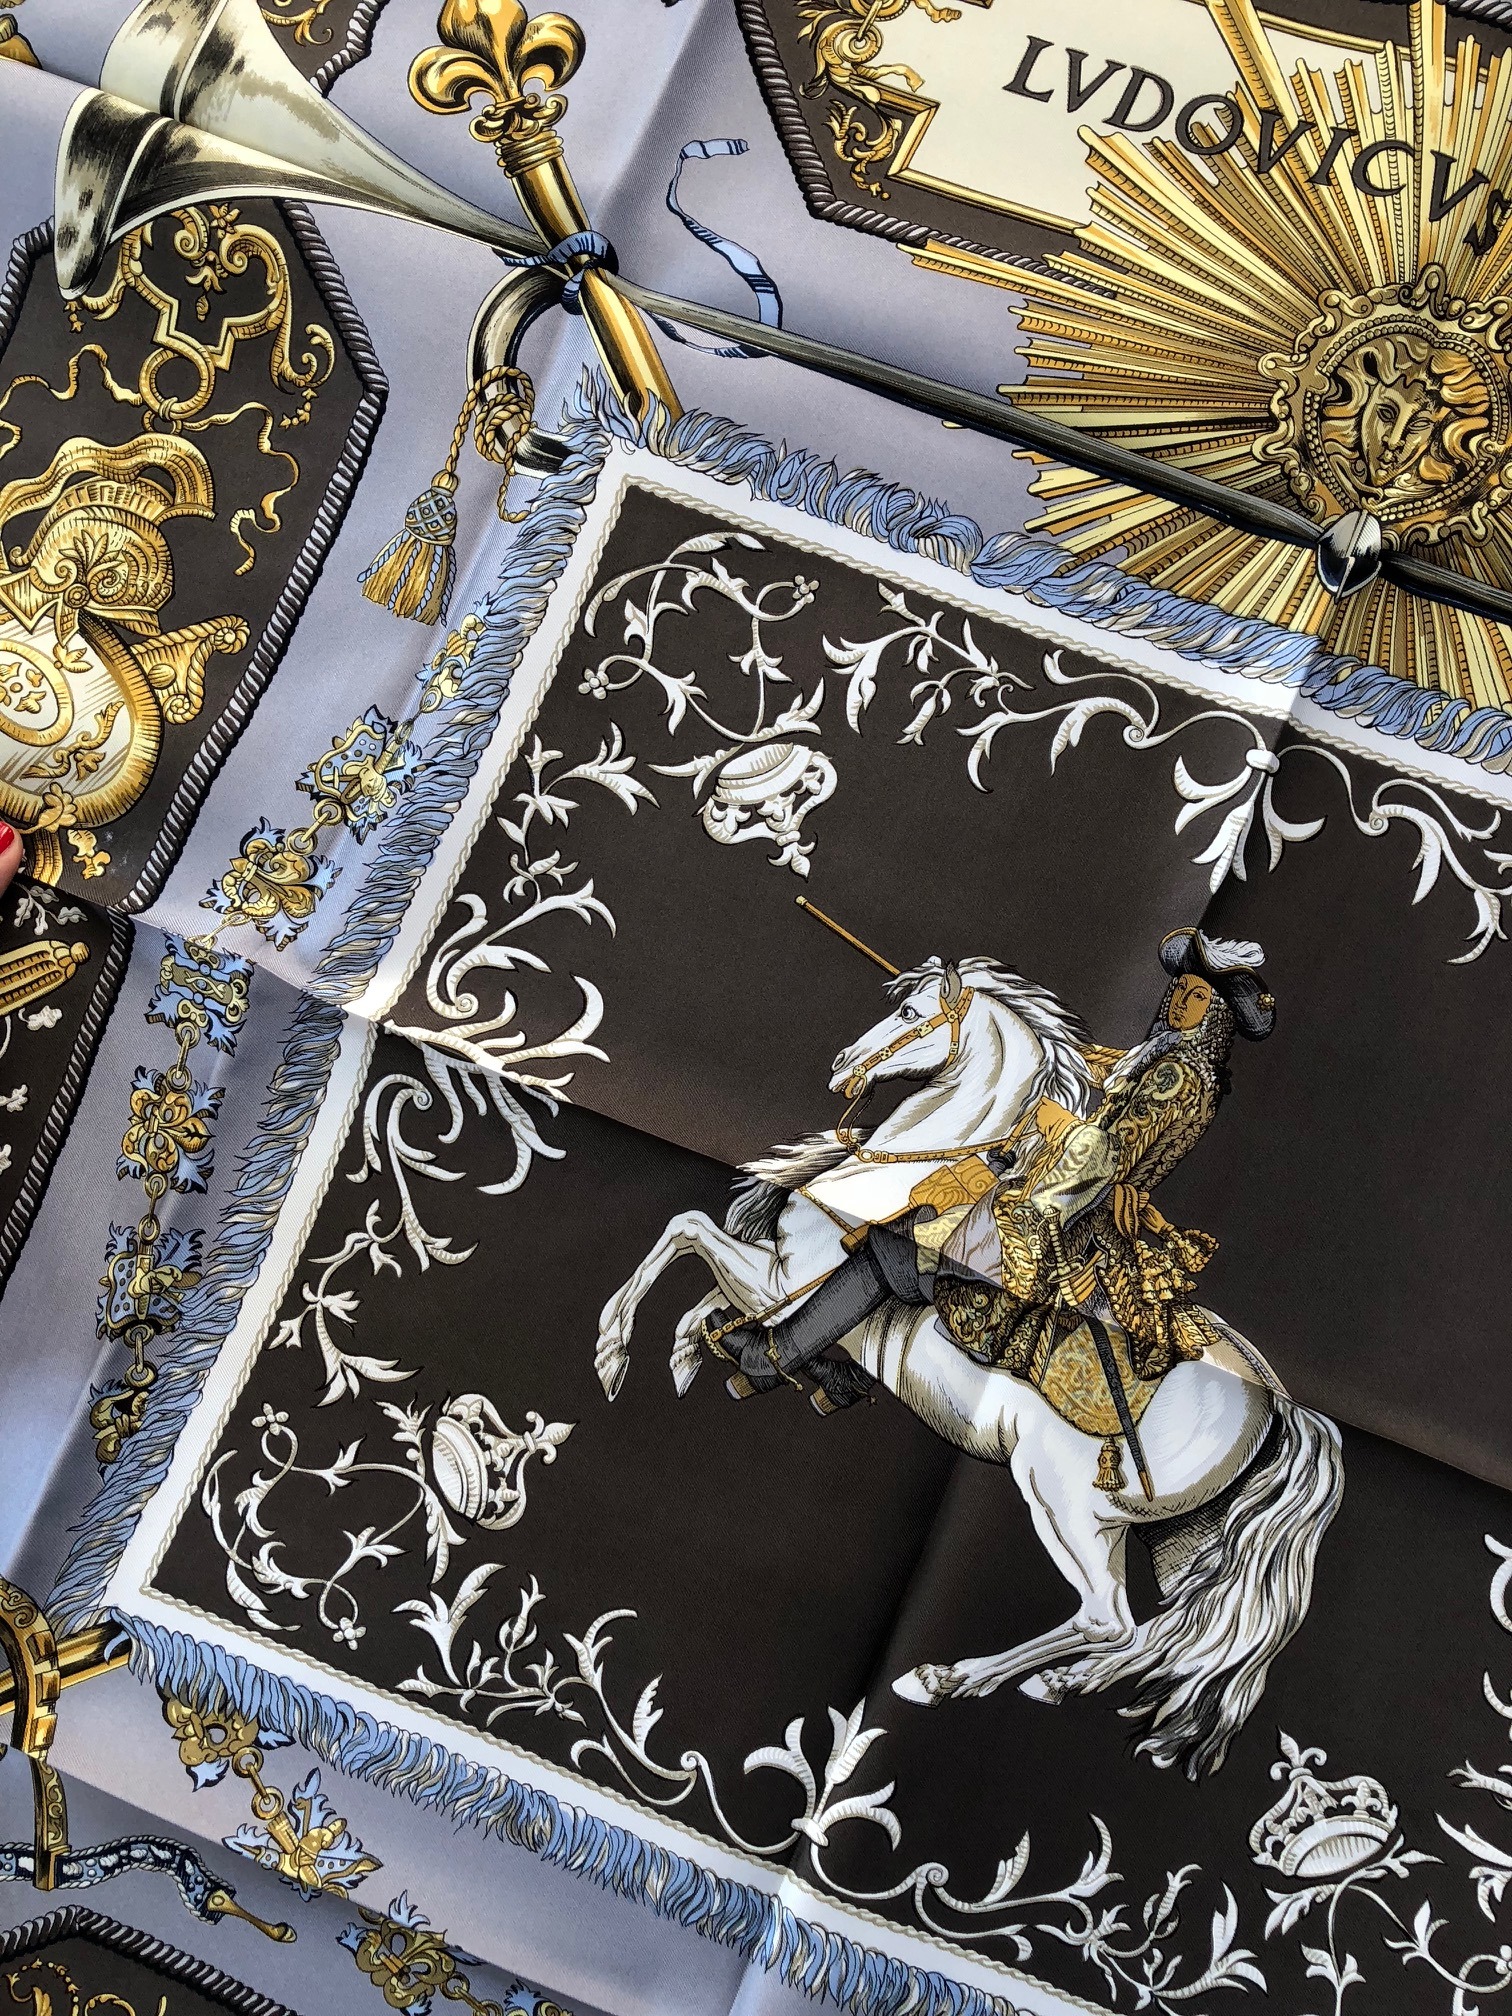 Hermès carré Square scarf 'Louis XIV Versailles' Ludovicus Magnus